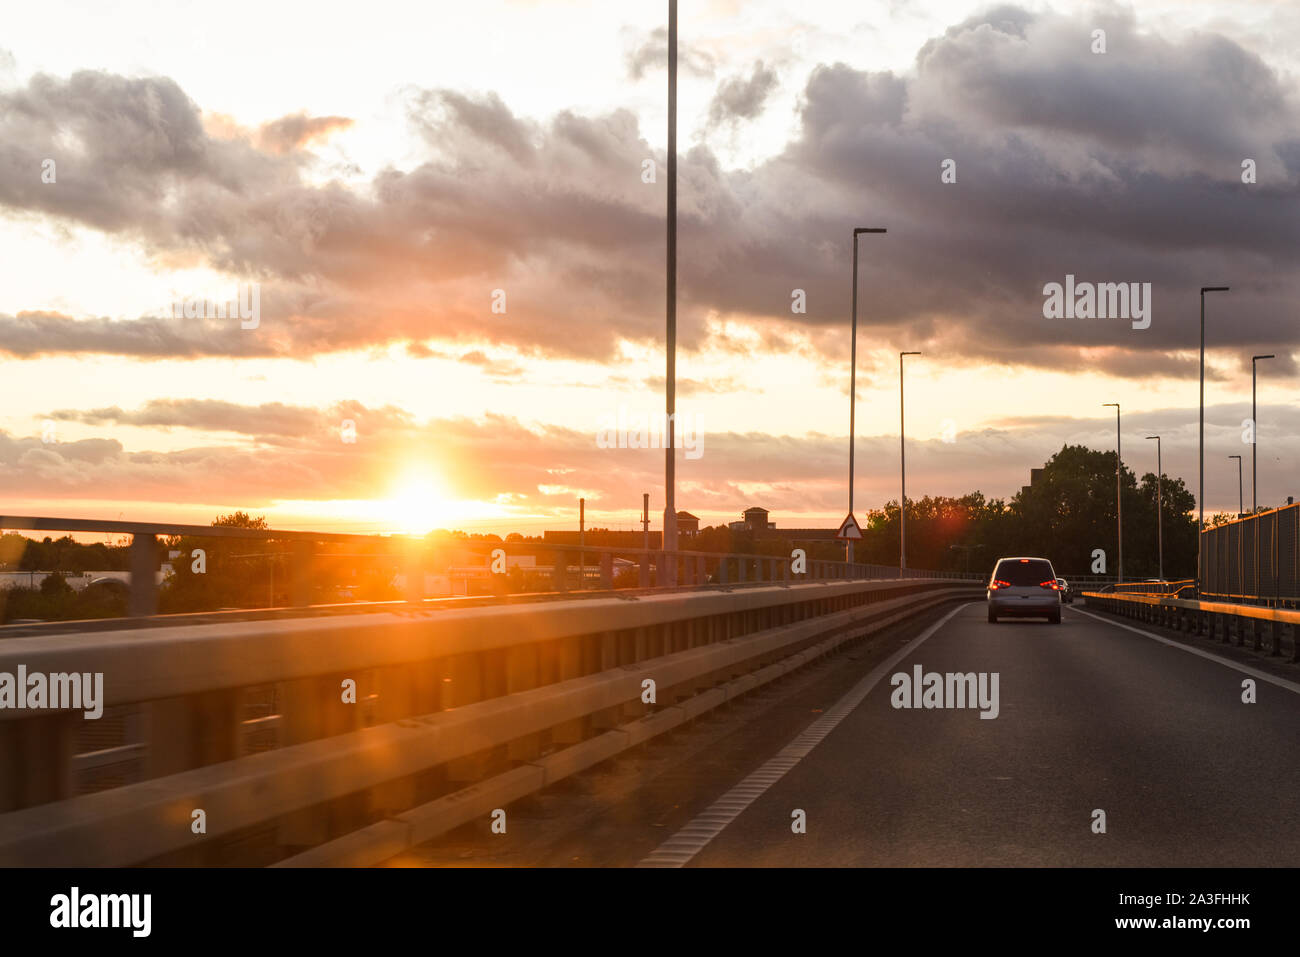 La guida al tramonto vista dall'interno del veicolo con traffico davanti Foto Stock